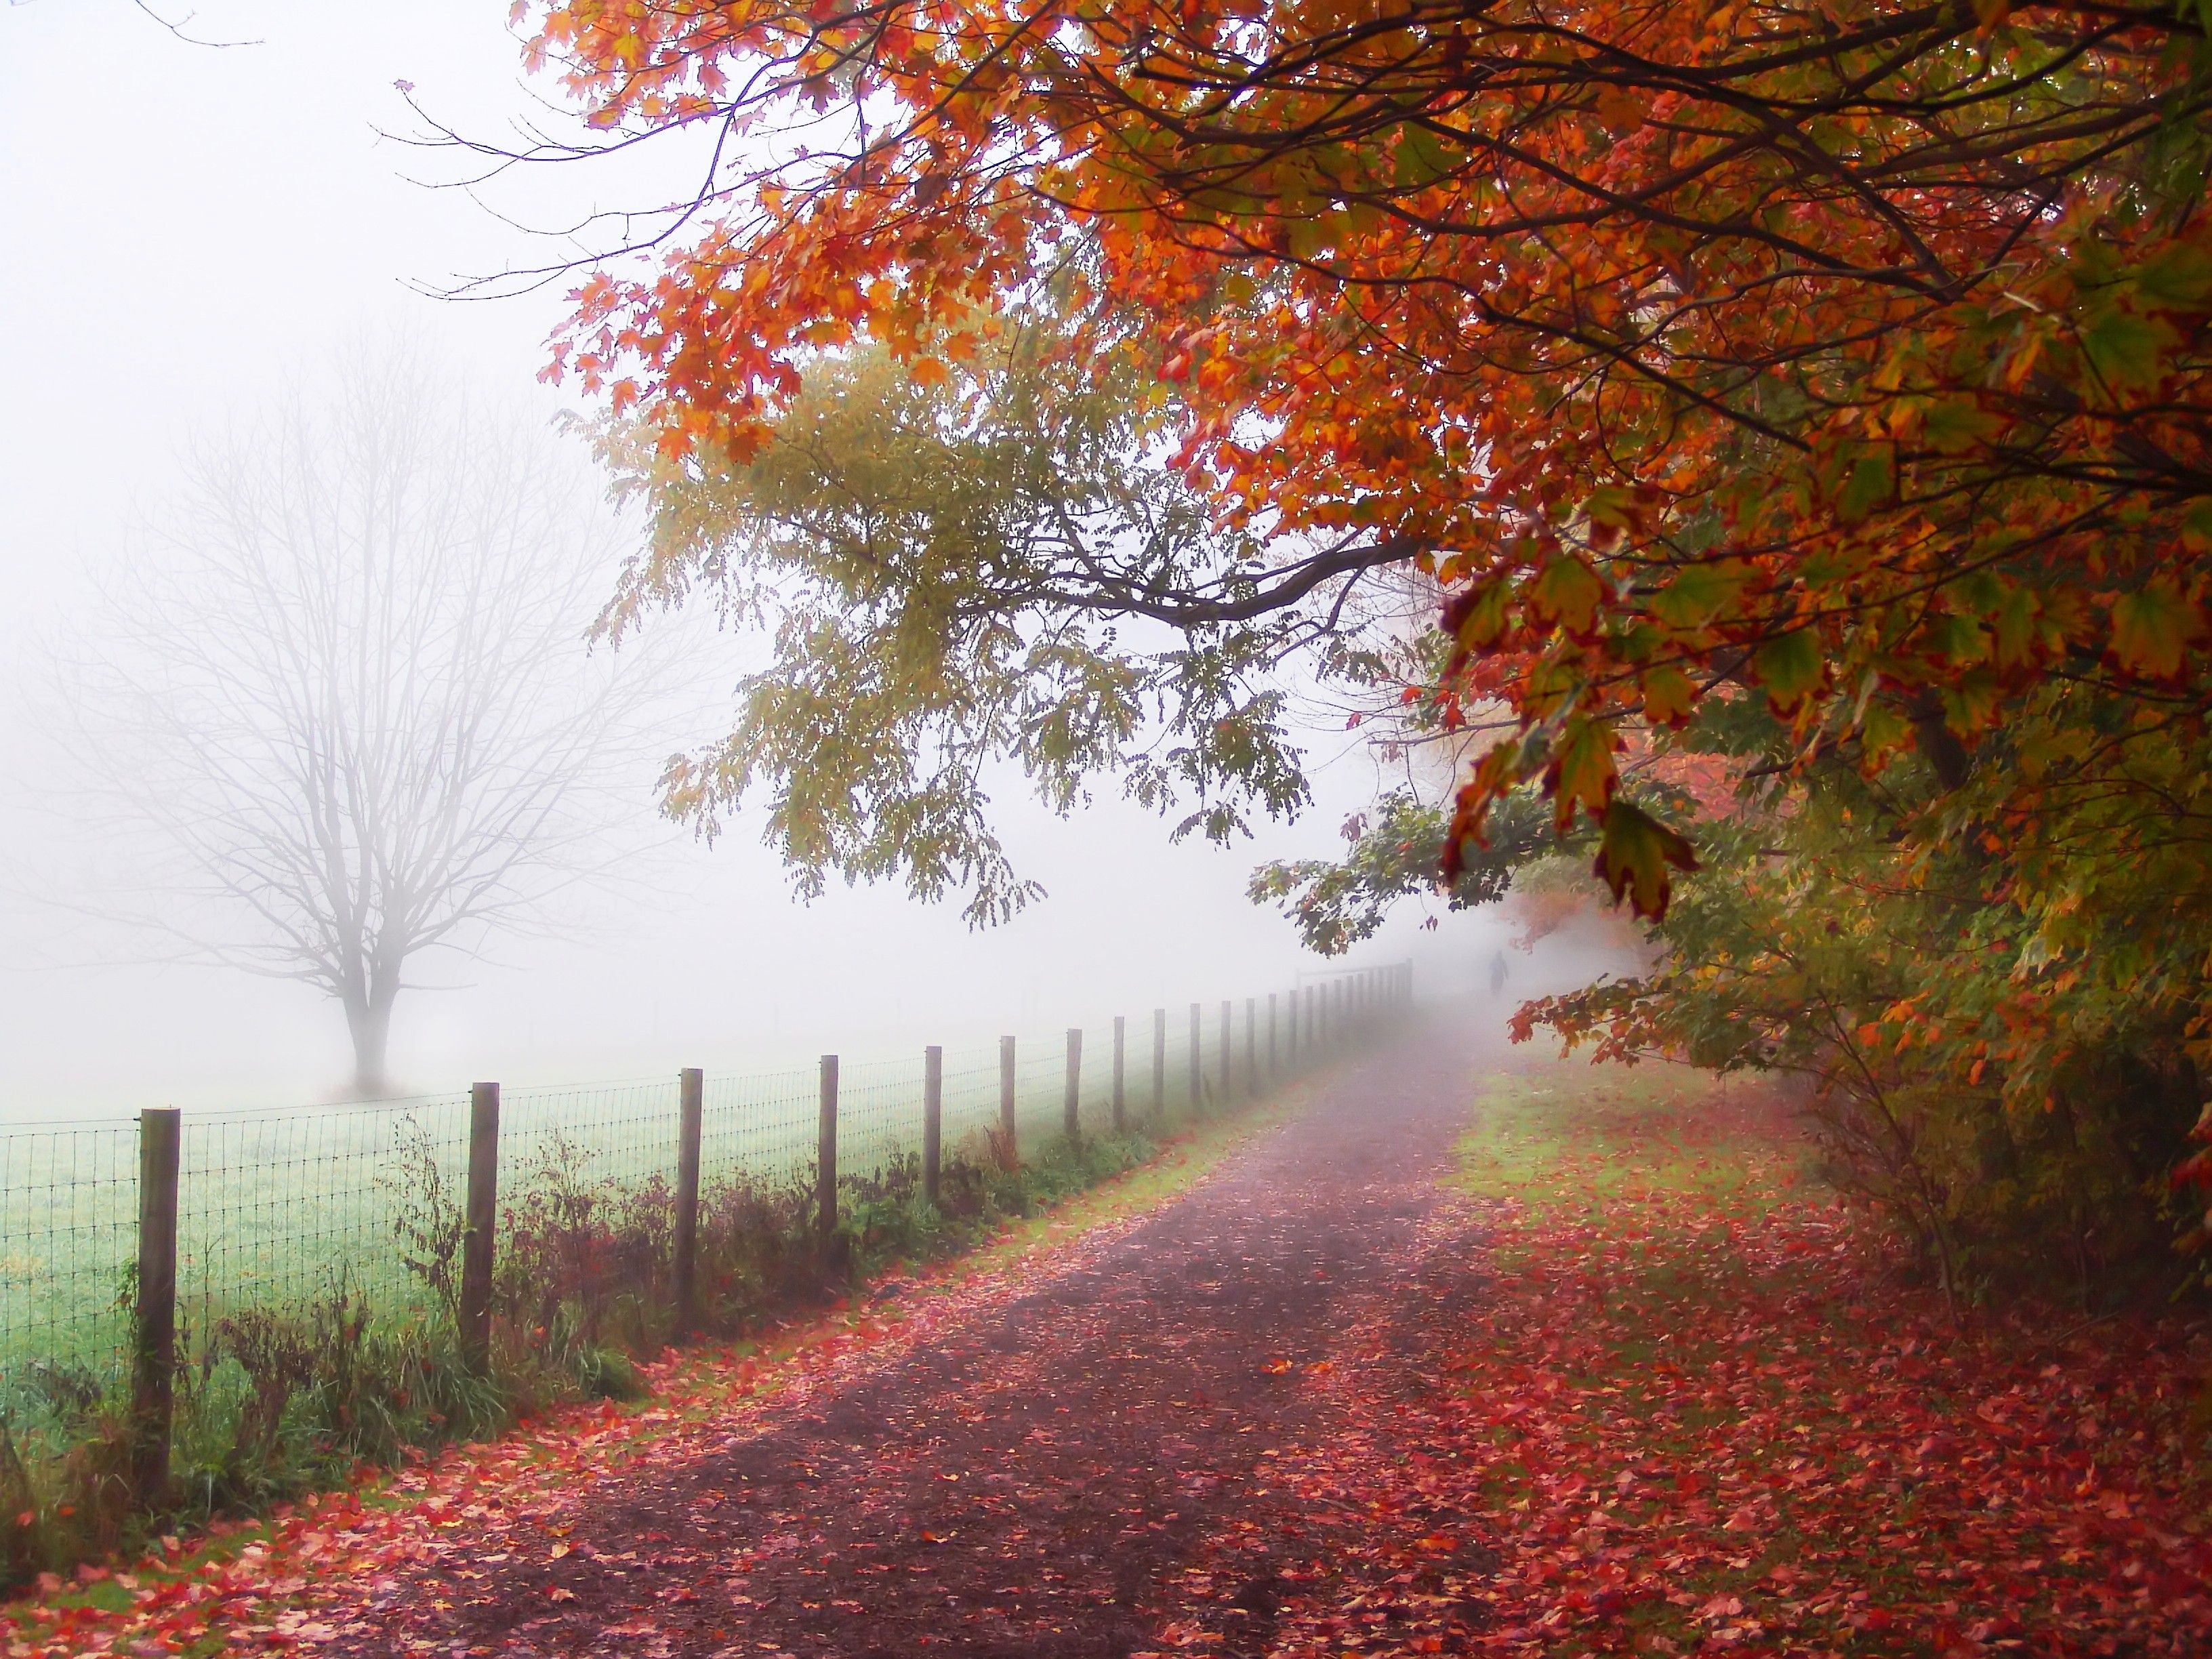 autumn, fog, roads - desktop wallpaper